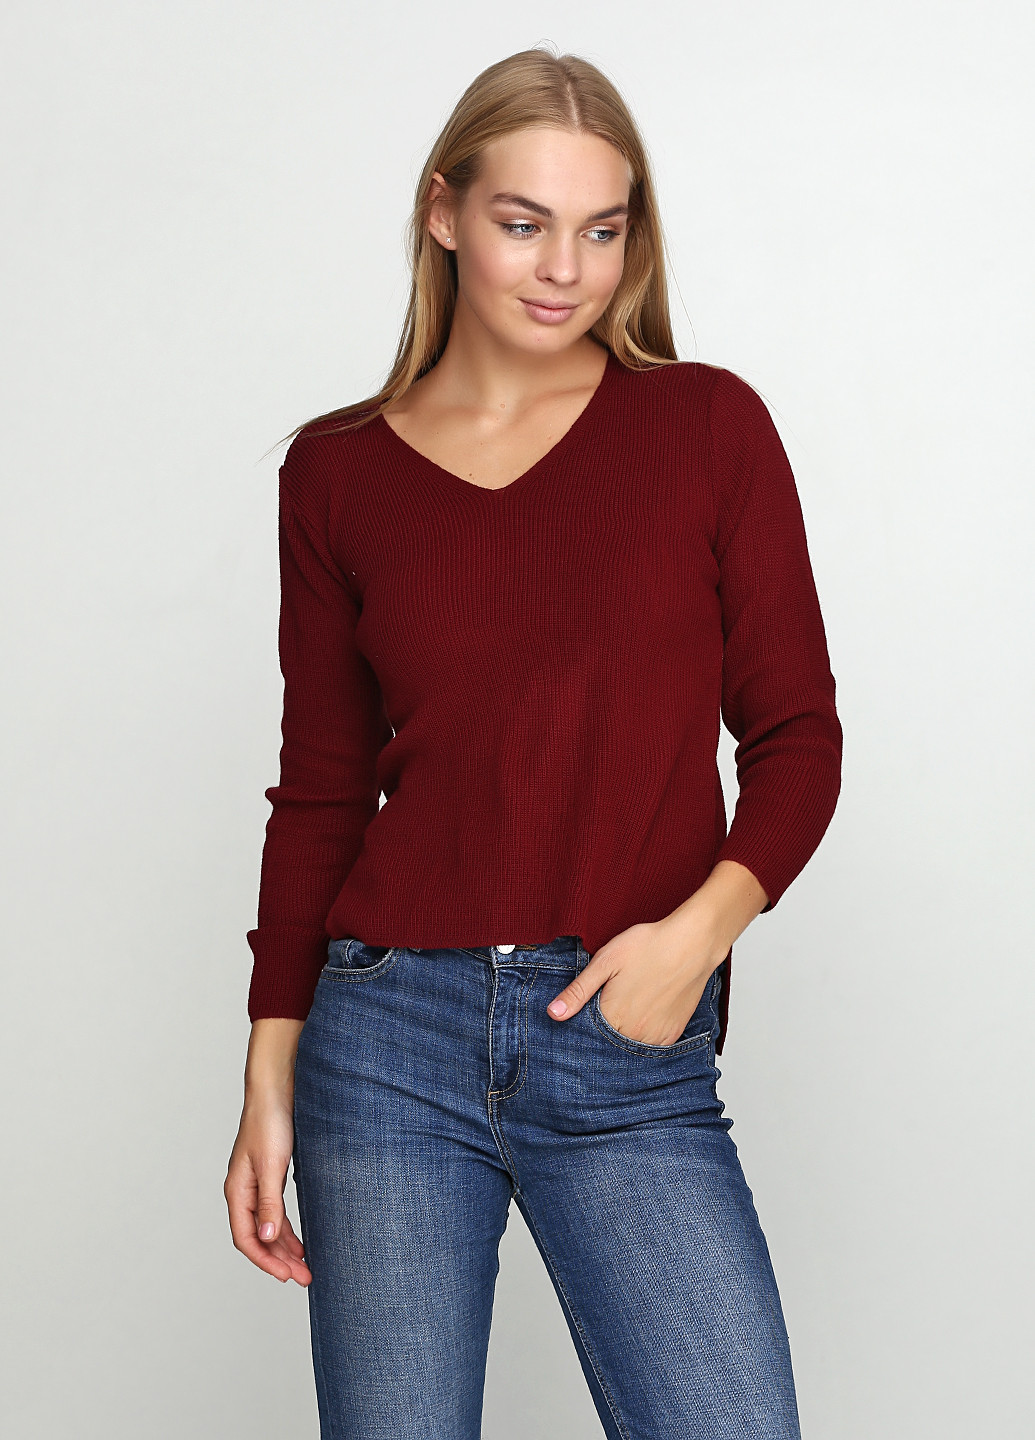 Бордовый демисезонный пуловер пуловер Imperial